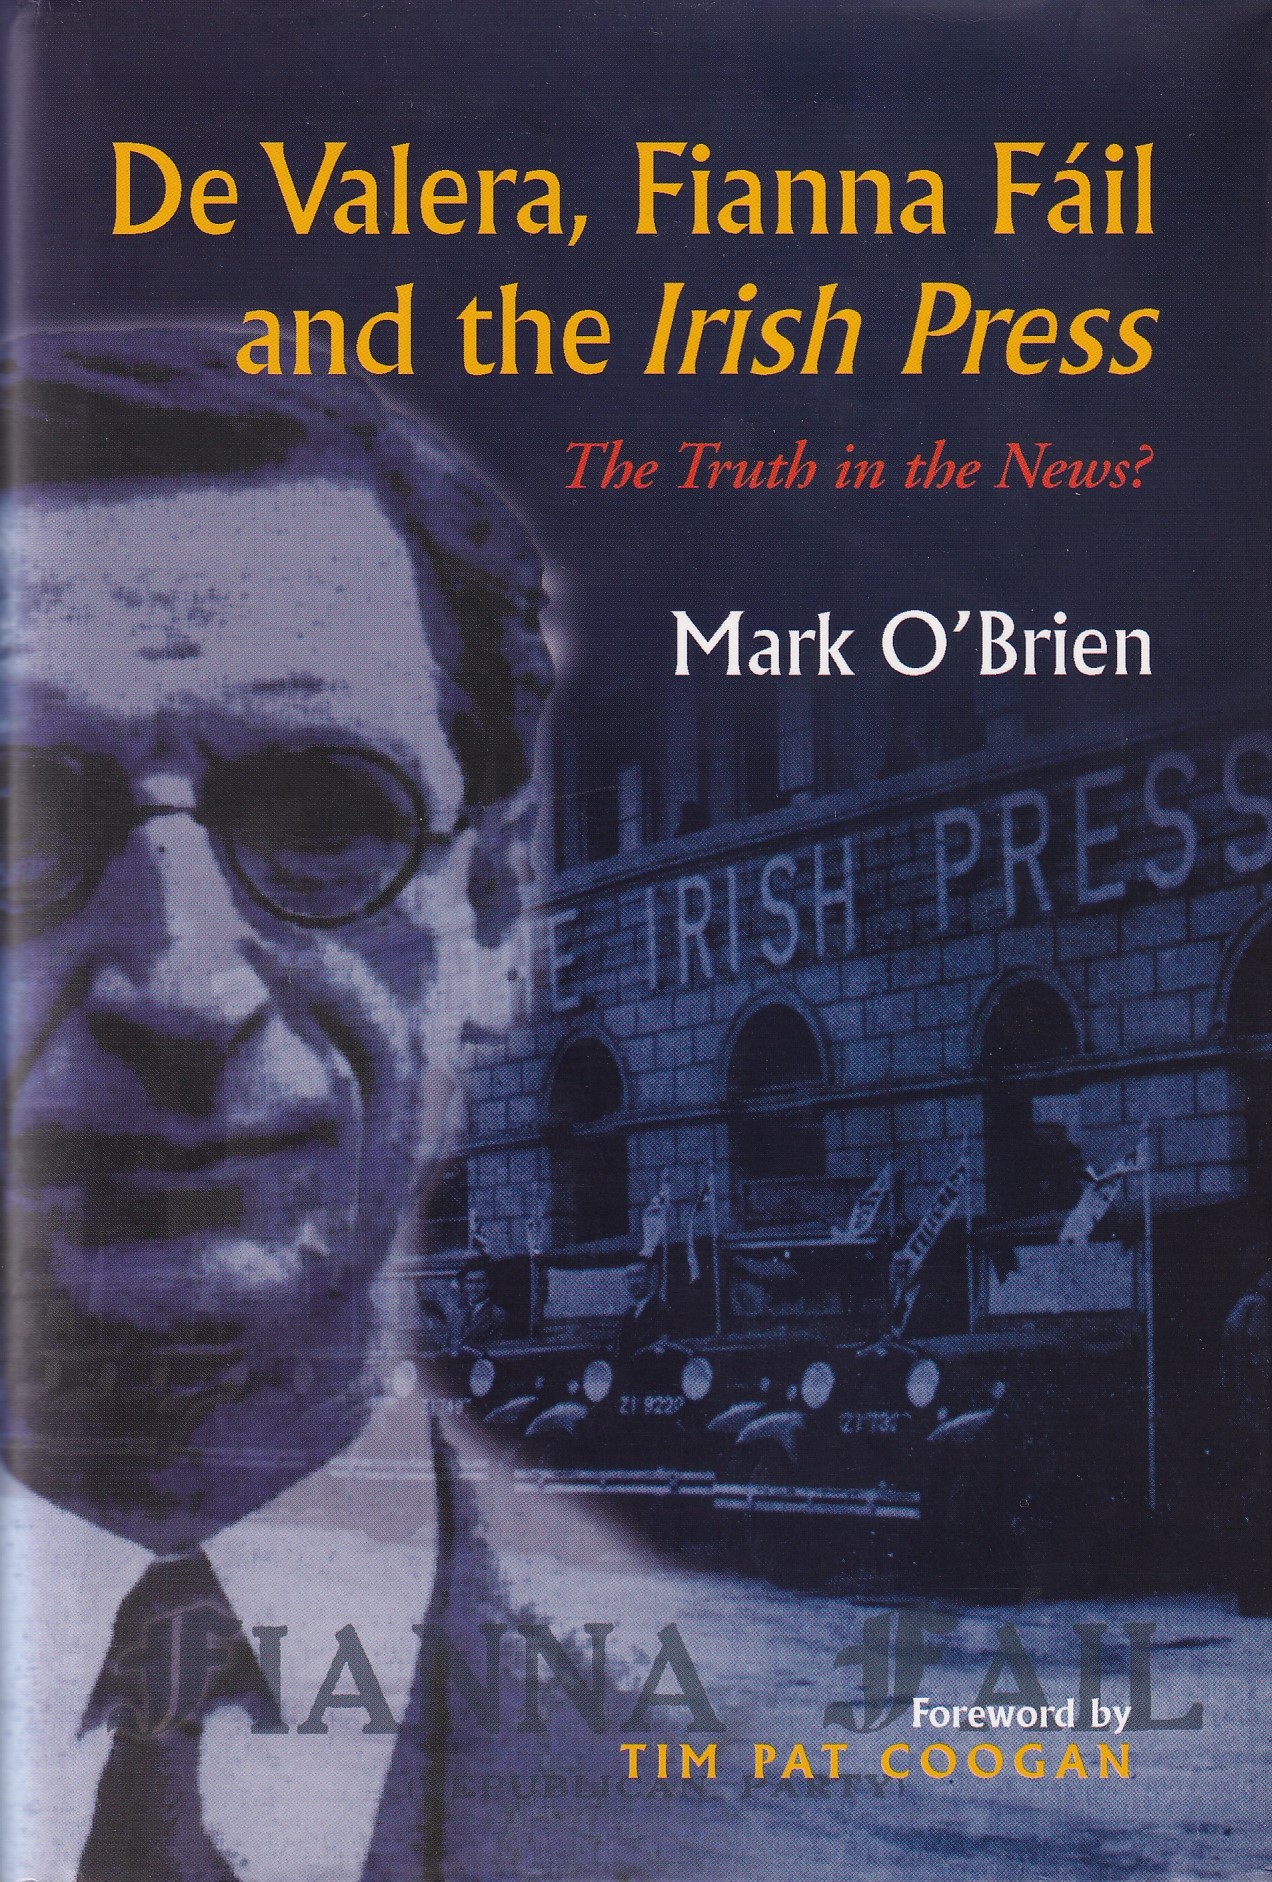 De Valera, Fianna Fail and the “Irish Press”: The Truth in the News? by Mark O'Brien